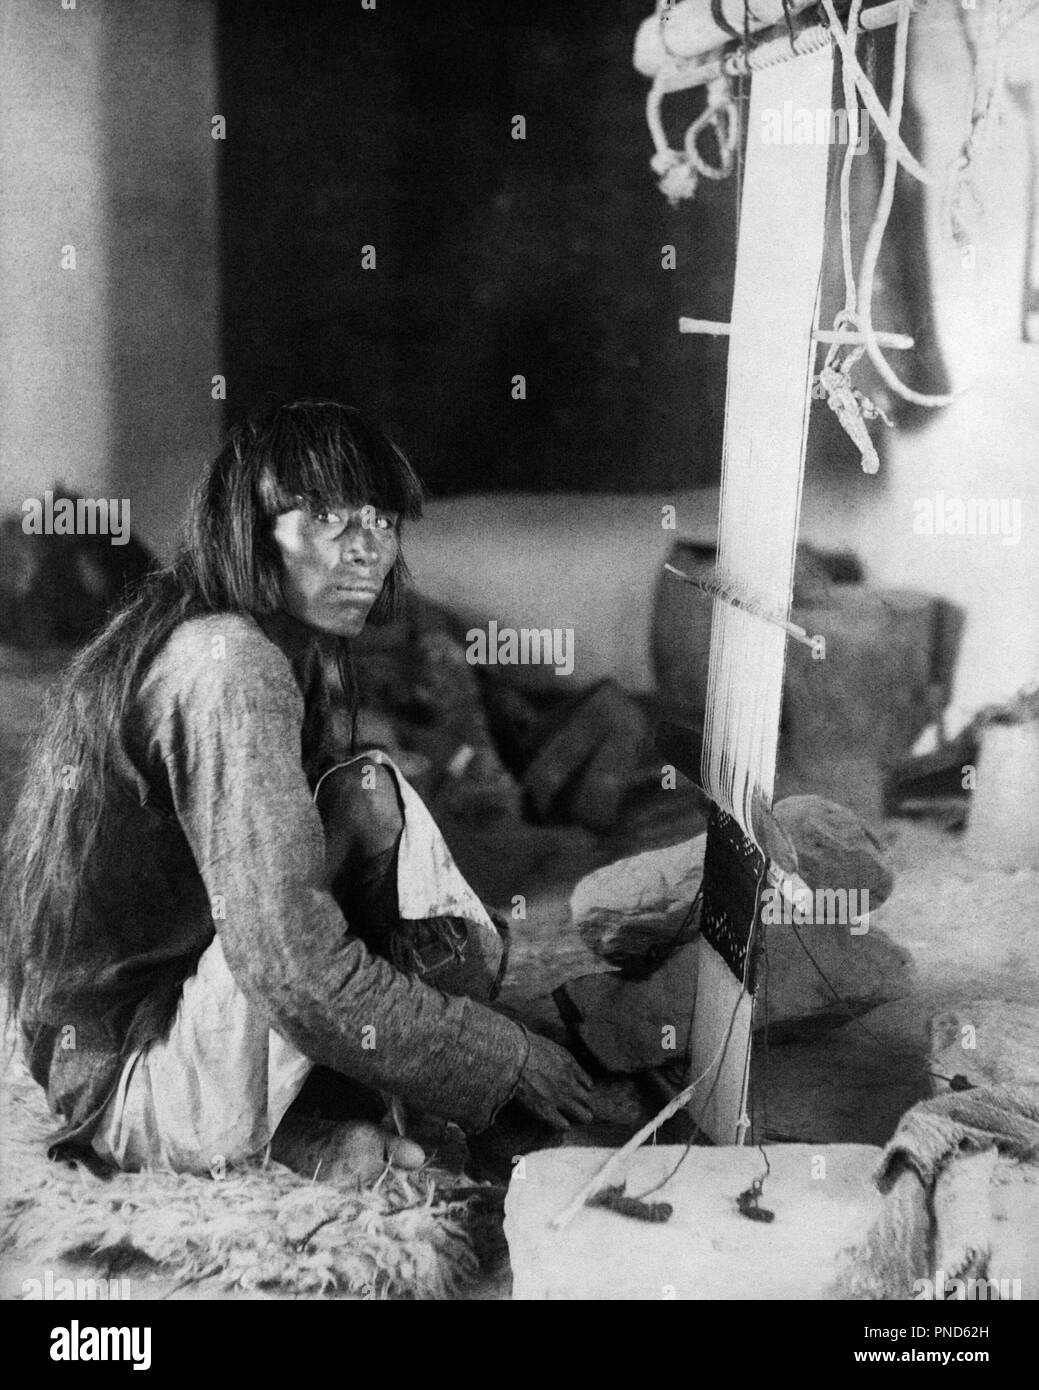 1890 1898 Native American Indian MAN LOOKING AT CAMERA cérémonial de tissage sur métier à tisser KILT - q73416 CPC001 TISSAGE TISSAGE PRÉCISION HARS YOUNG ADULT MAN BANGS KILT DE CÉRÉMONIE NOIR ET BLANC à l'ANCIENNE GAINE WEAVER Banque D'Images